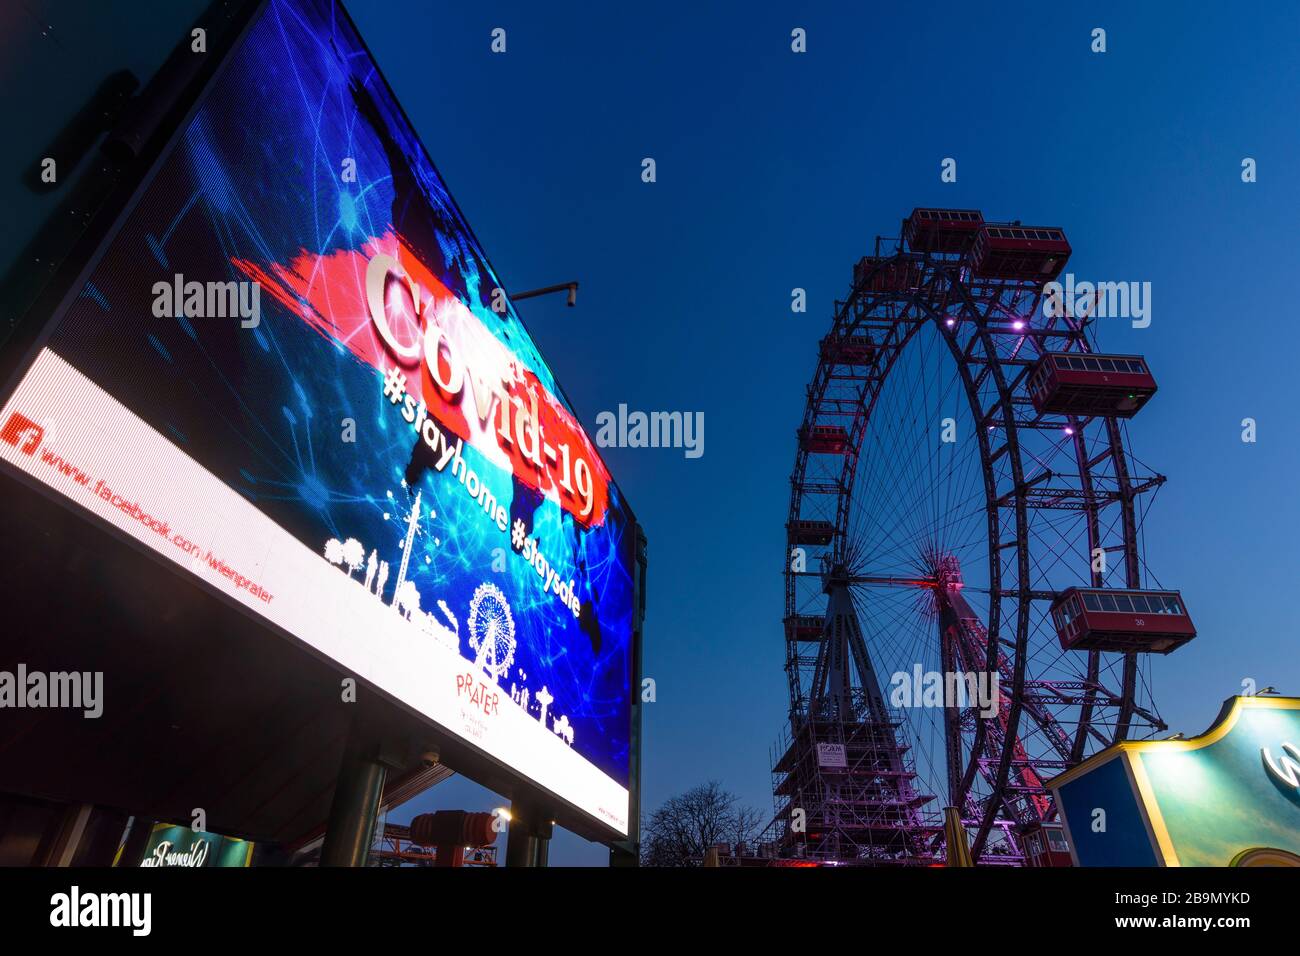 Wien, Wien: Informationsvideowand mit COVID-19-Warnung, Ferris Wheel am Prater wegen Corona-Virus (COVID-19) geschlossen, im 02. Leopoldsstadt, Wien, A. Stockfoto